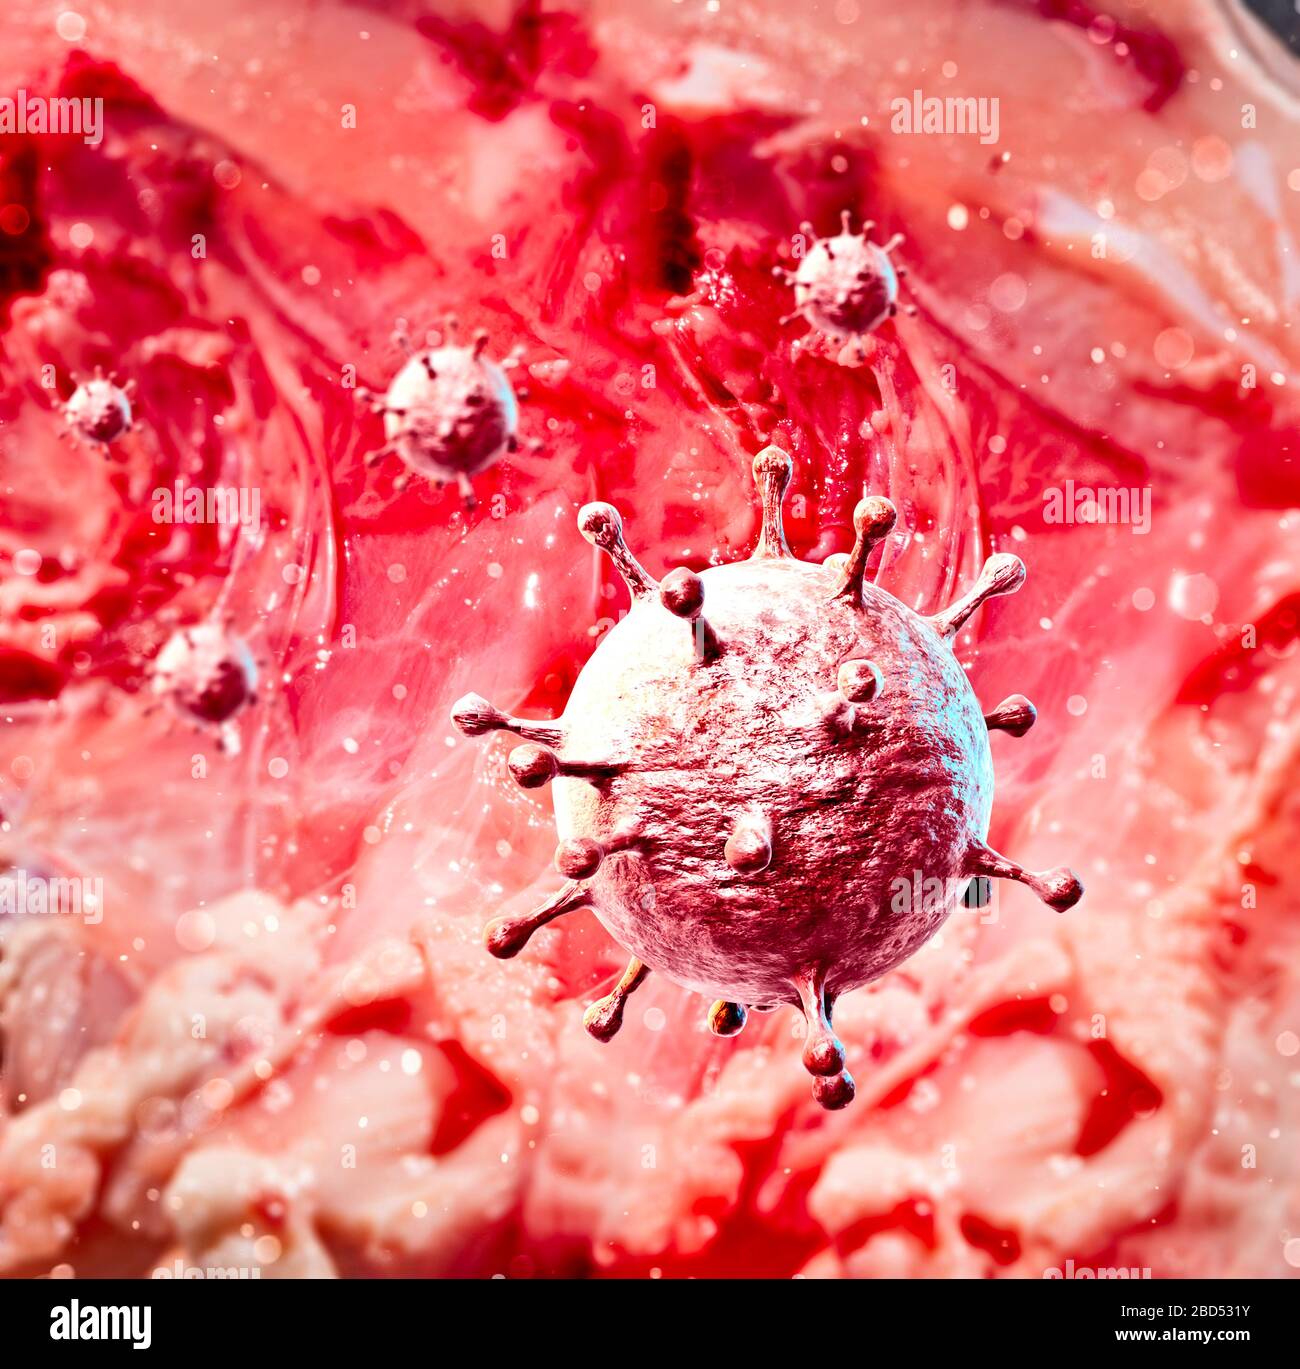 Mikroskopische Sicht auf Coronavirus, einen Erreger, der die Atemwege angreift. Covid-19. Analyse und Test, Experimentieren. Virusinfektion. Stockfoto